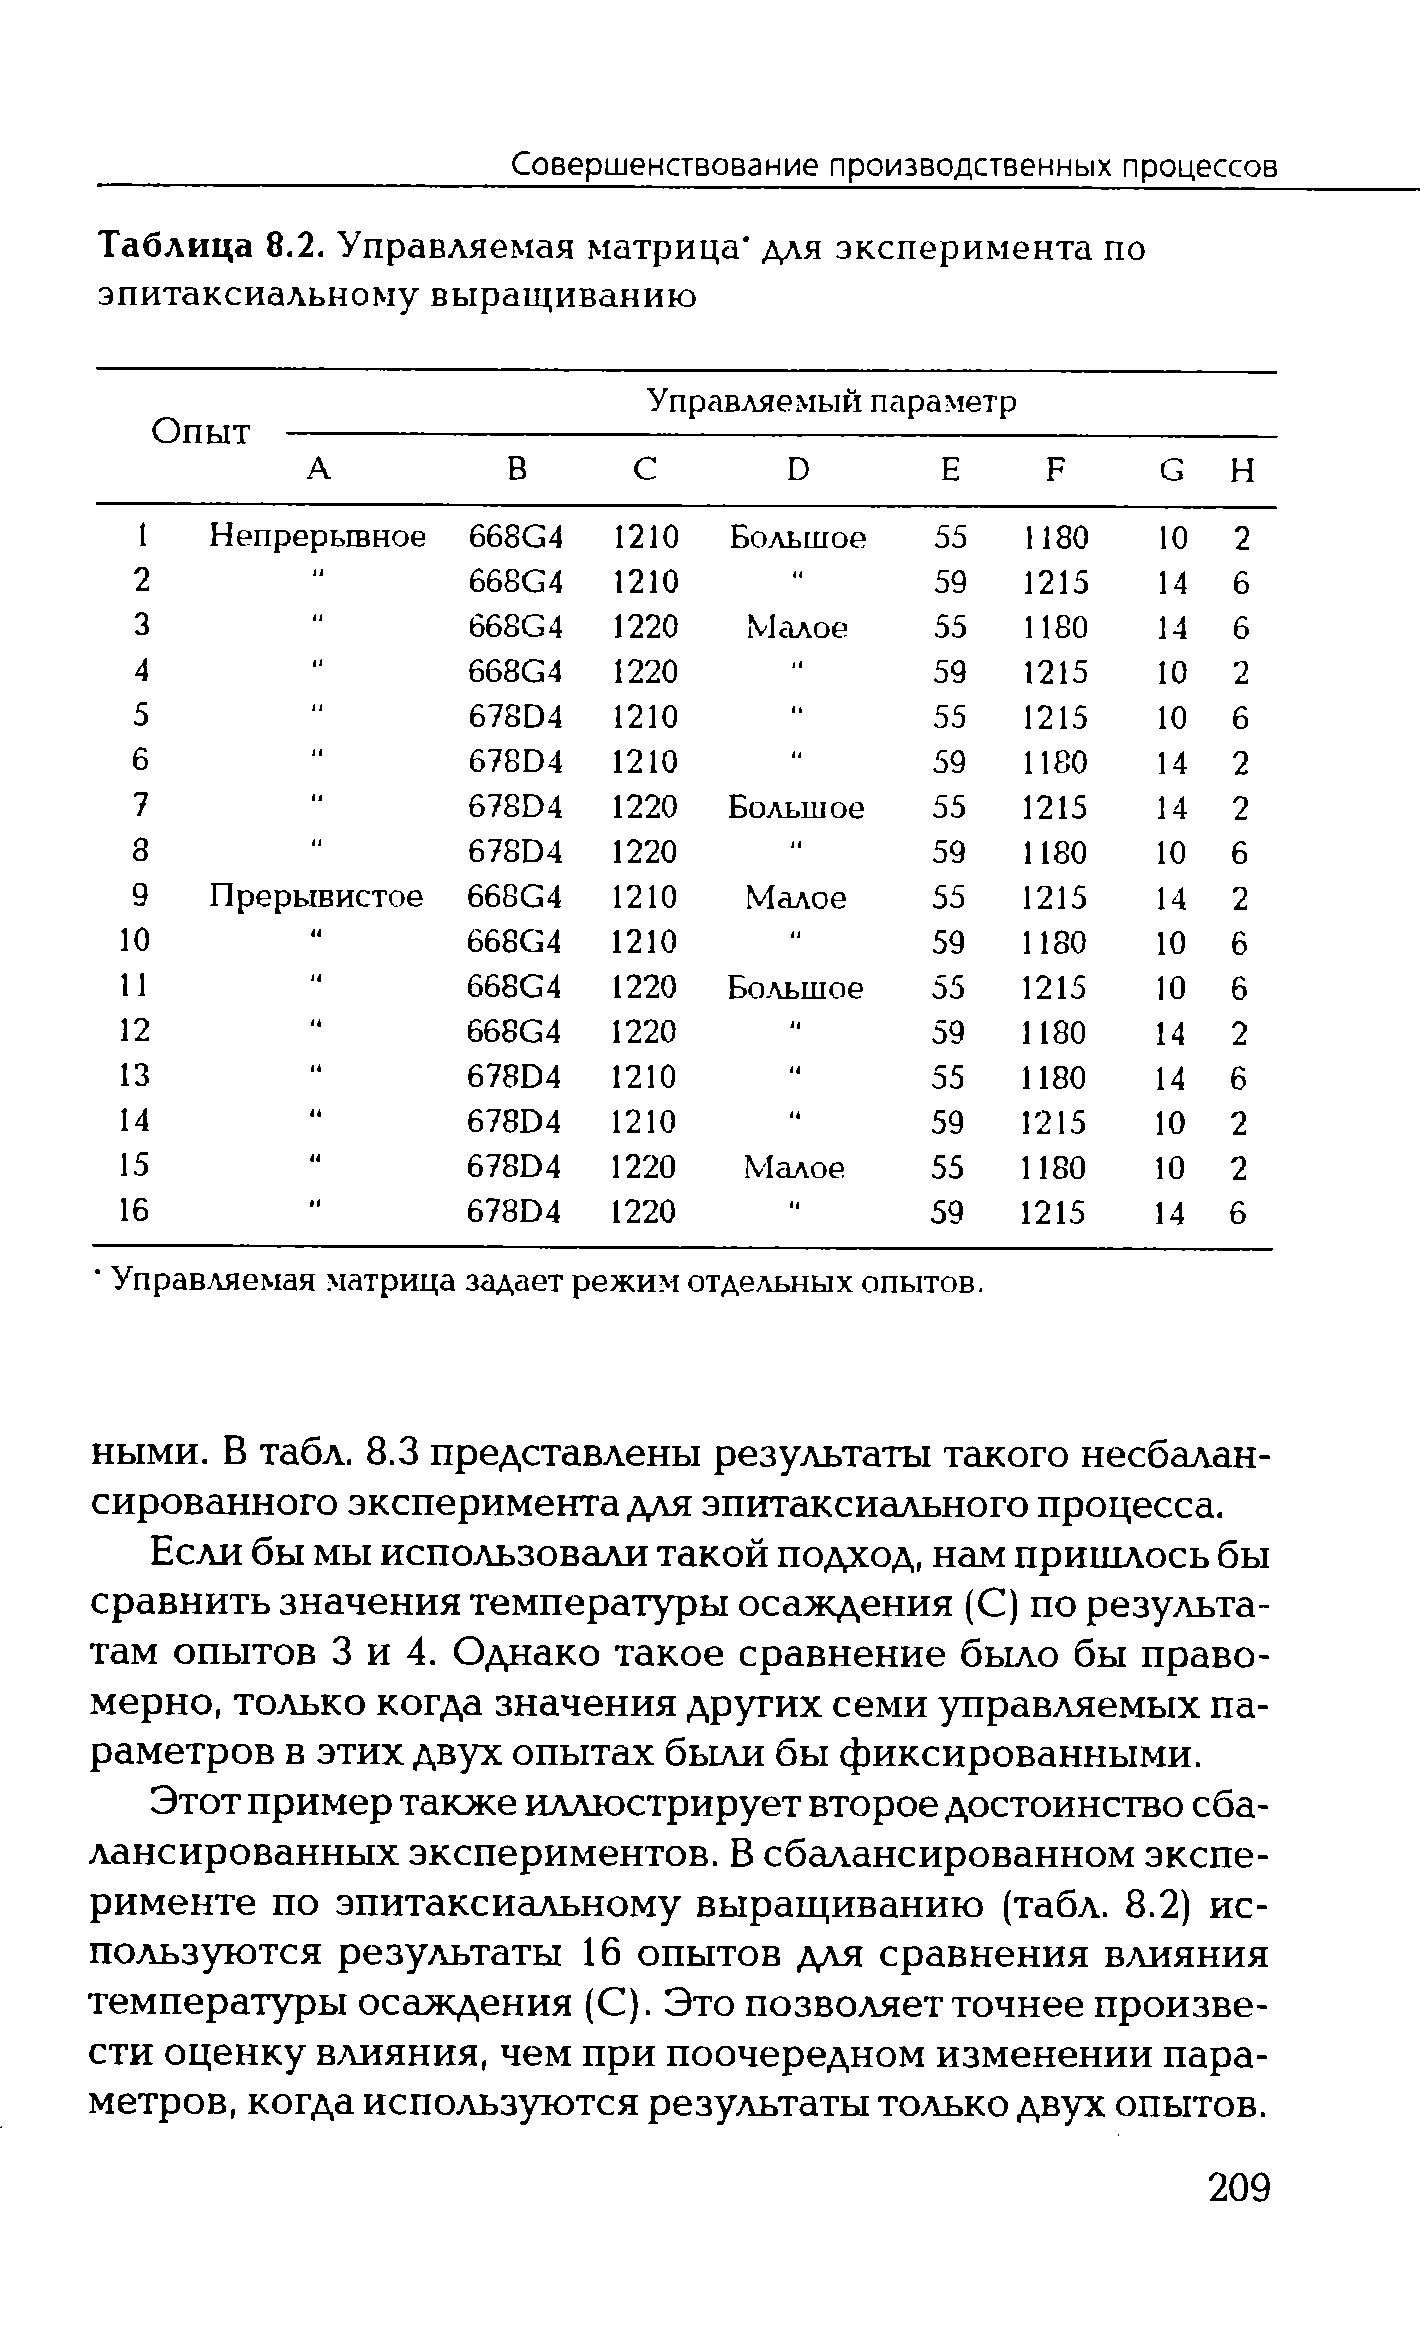 Таблица 8.2. Управляемая матрица для эксперимента по
